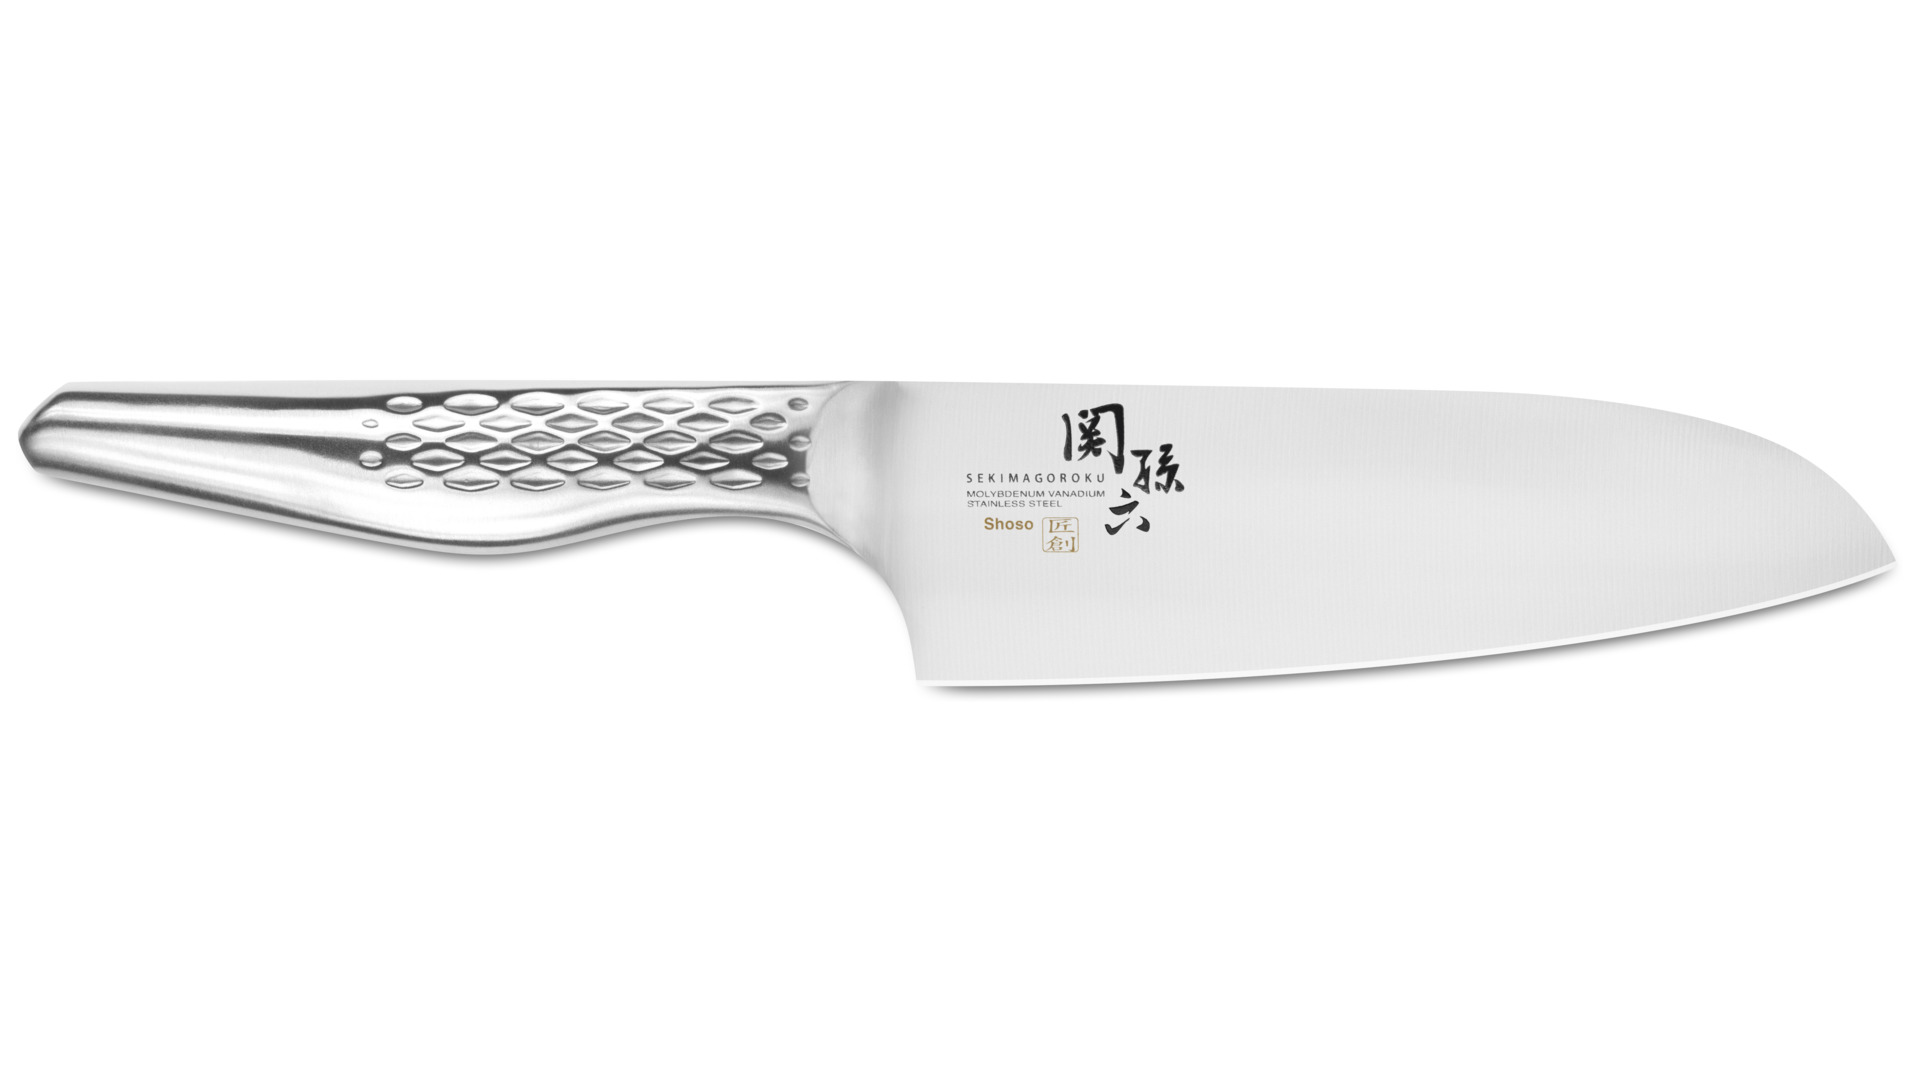 Нож кухонный Сантоку KAI Магороку Шосо 14,5 см, сталь кованая нержавеющая